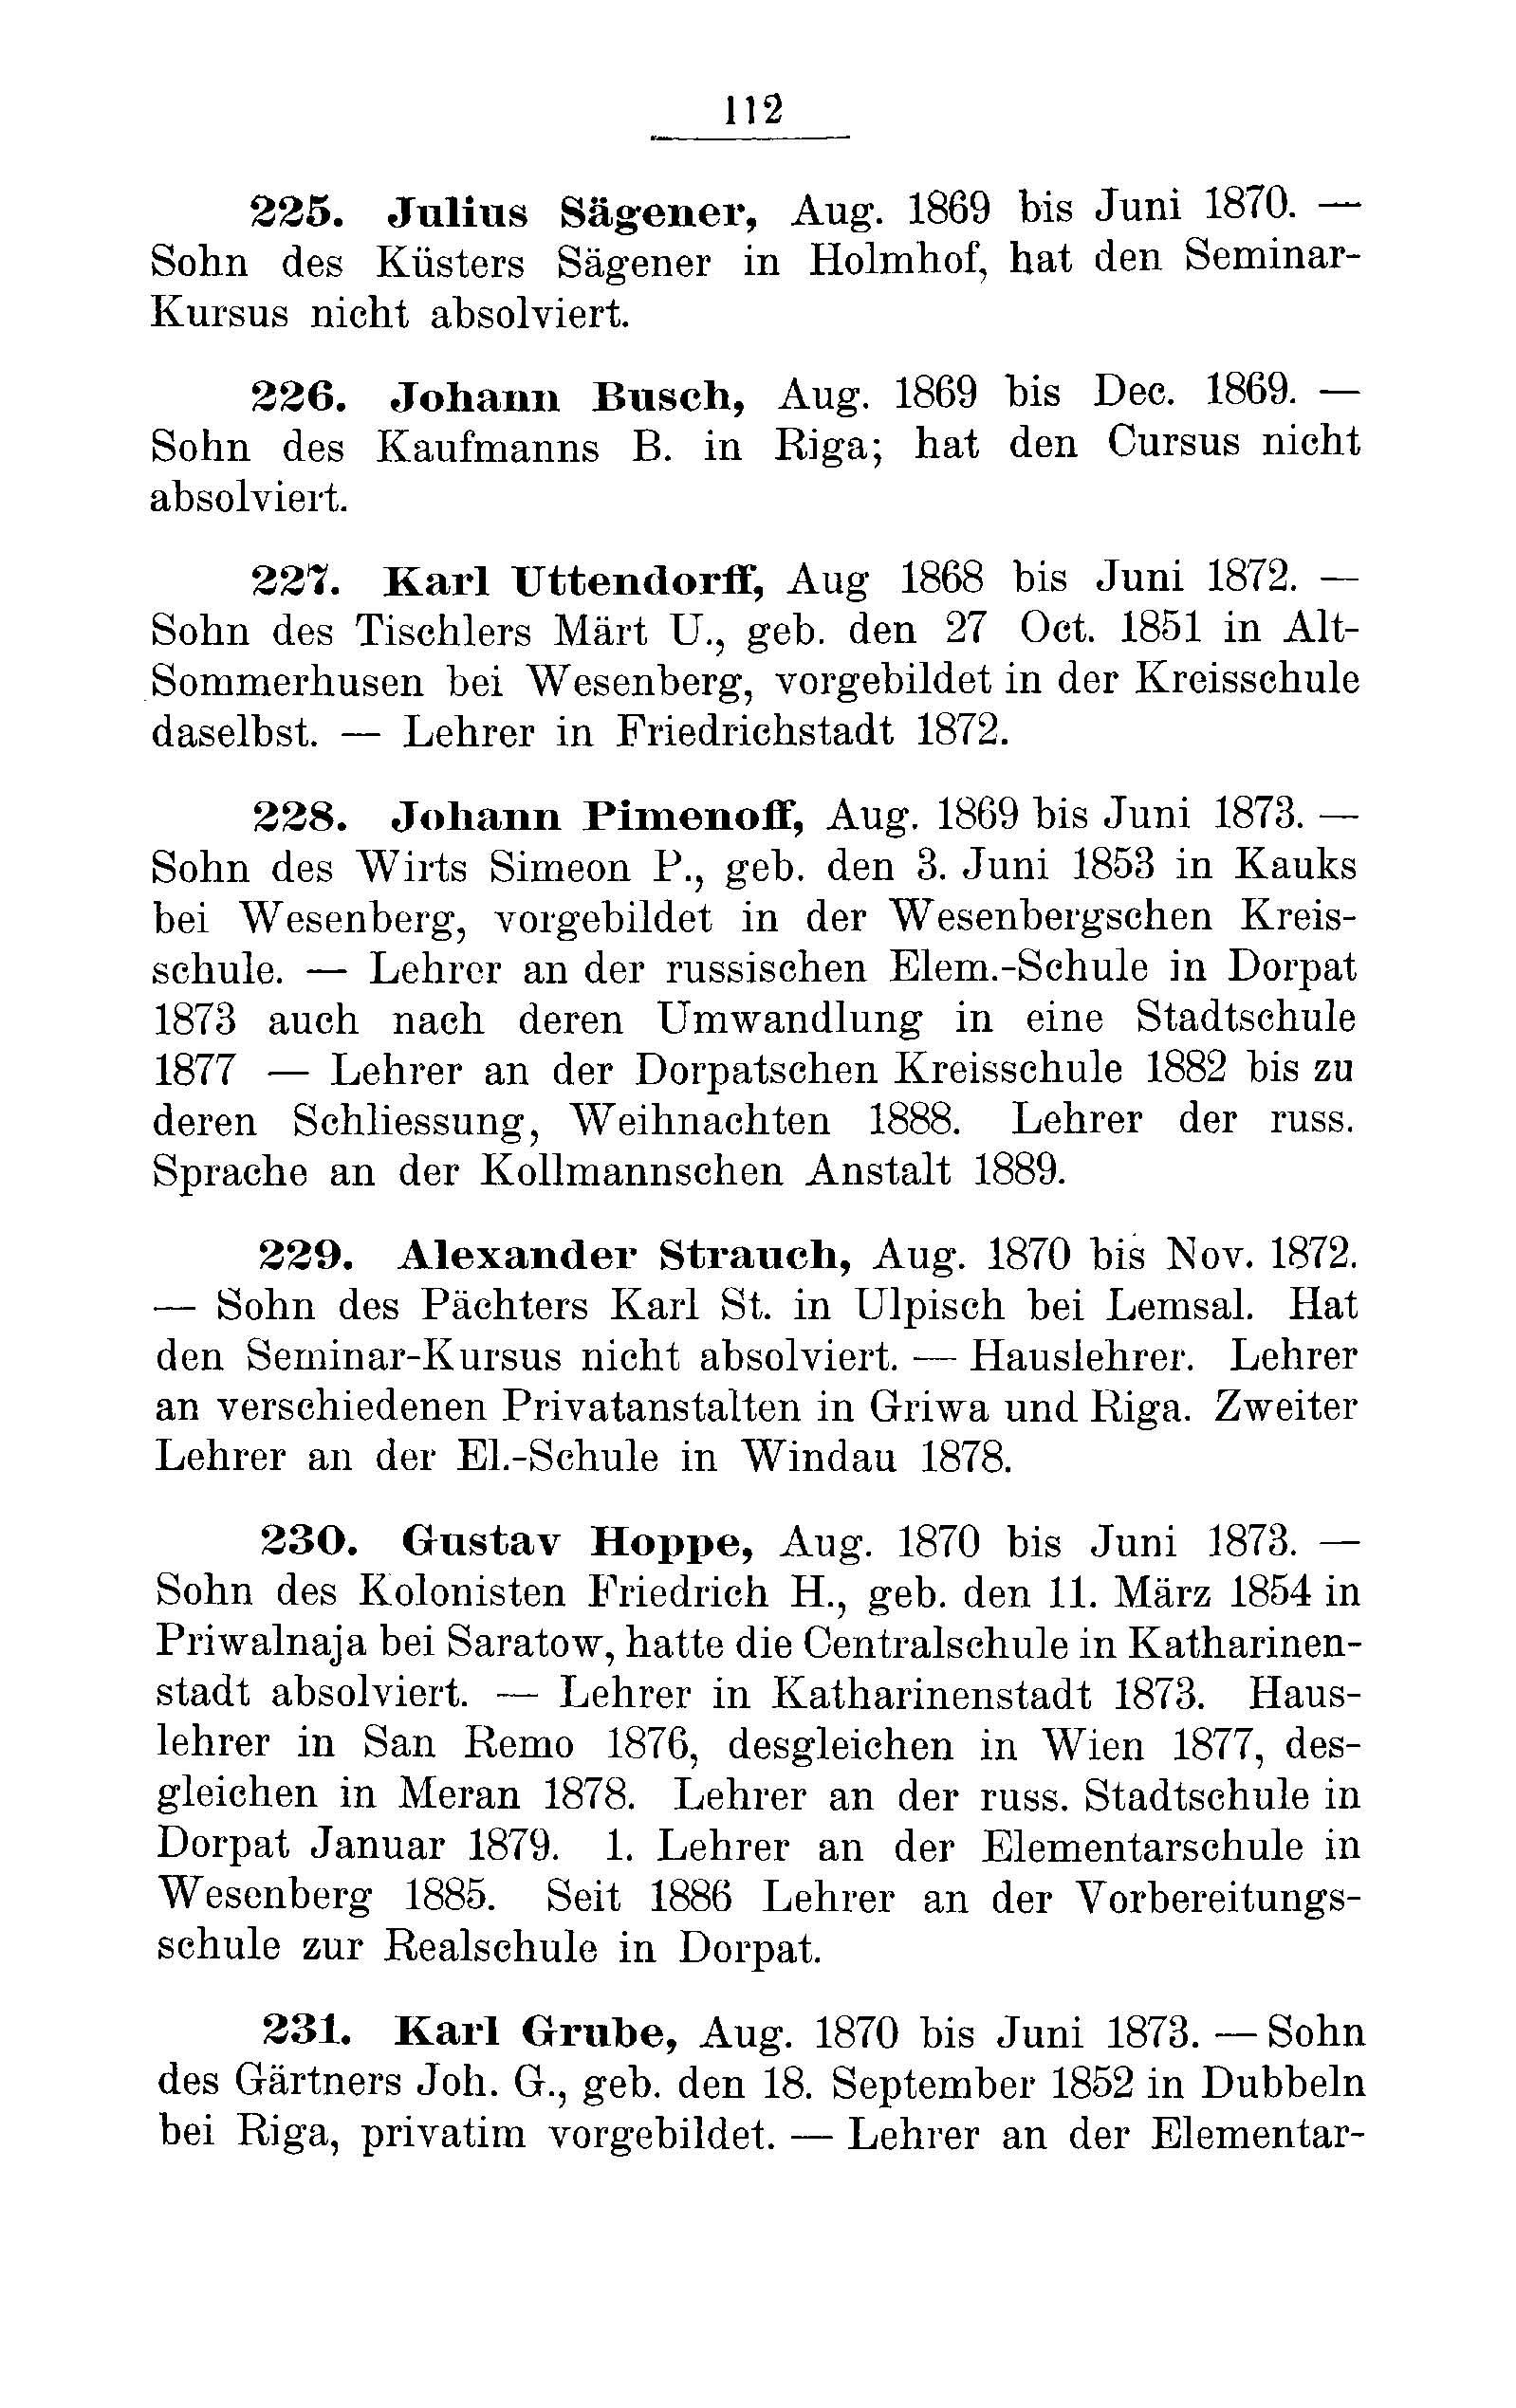 Das Erste Dorpatsche Lehrer-Seminar (1890) | 115. Main body of text